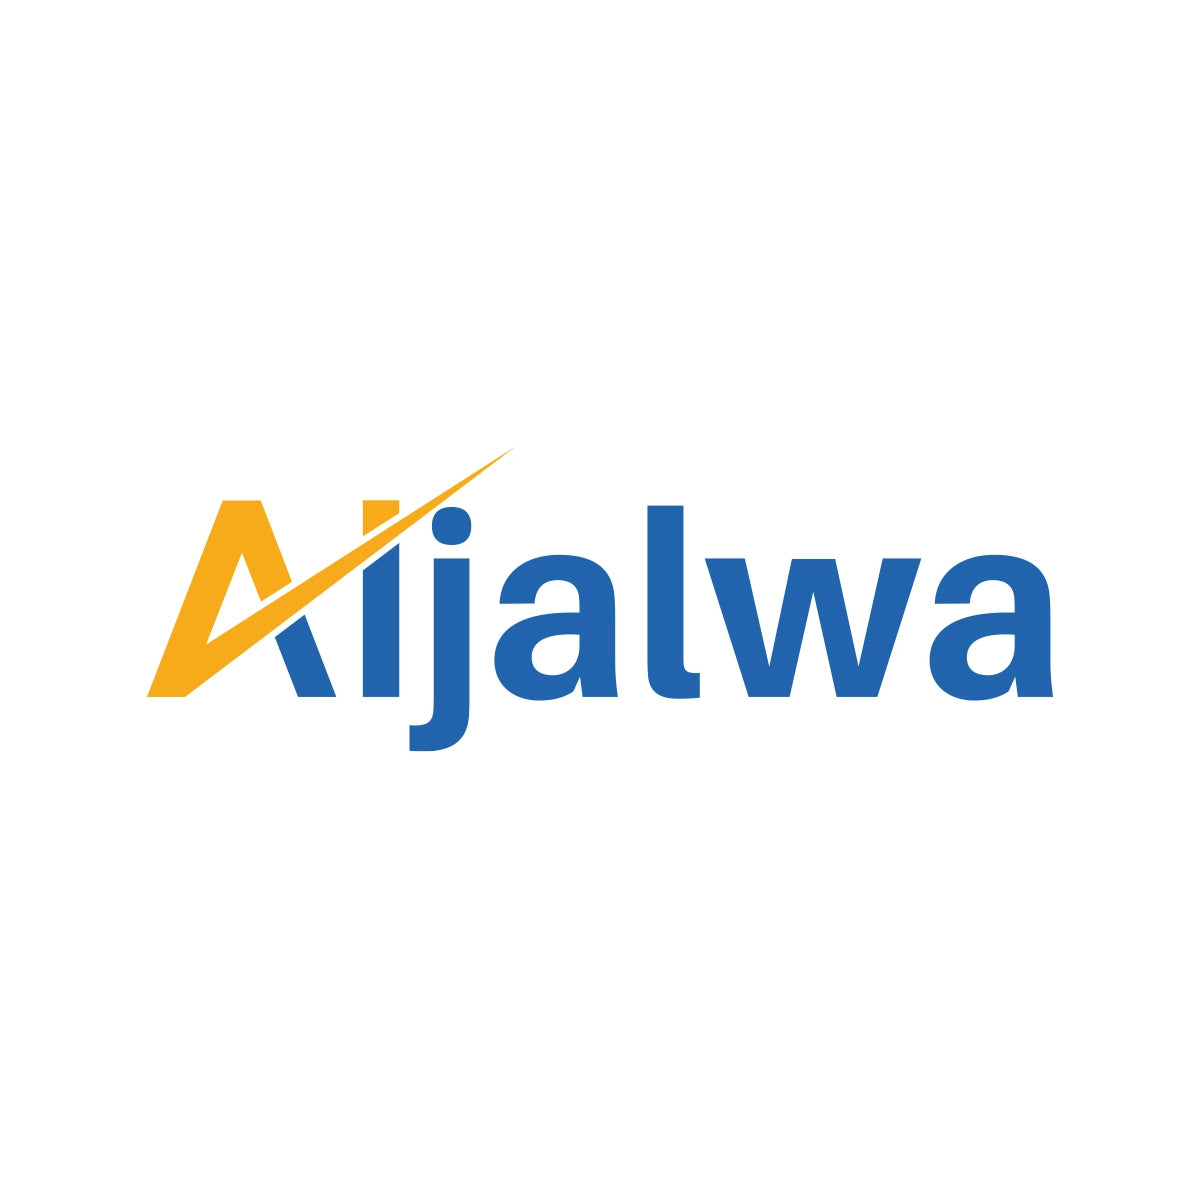 aijalwa.com